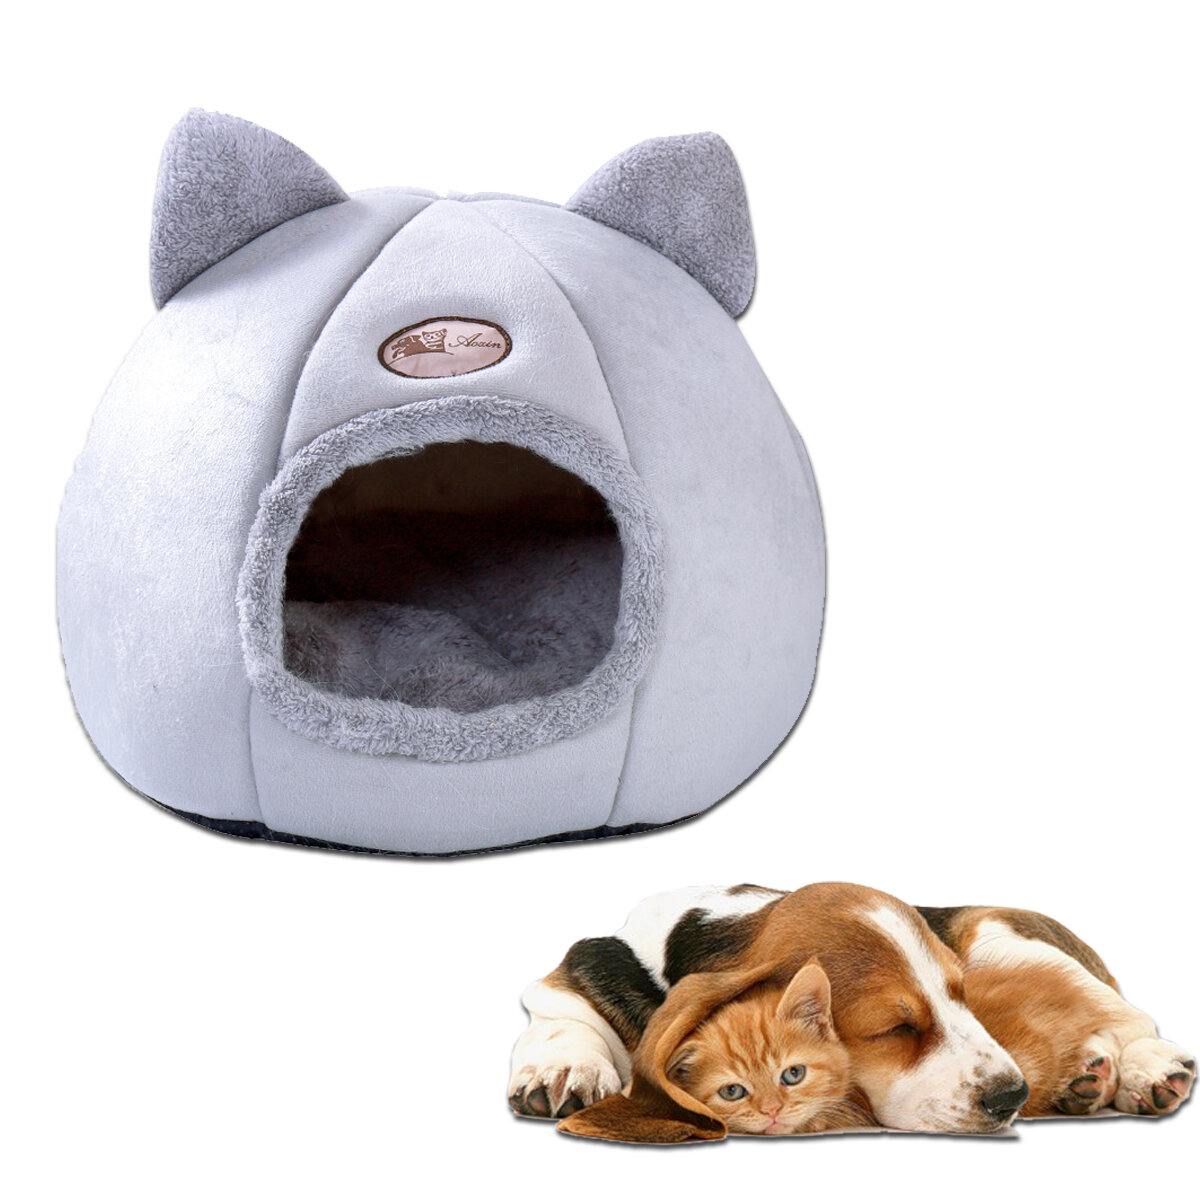 ペットベッド犬小屋犬小屋犬の暖かいクッションバスケットペットファッションストロベリー洞窟猫テントマット